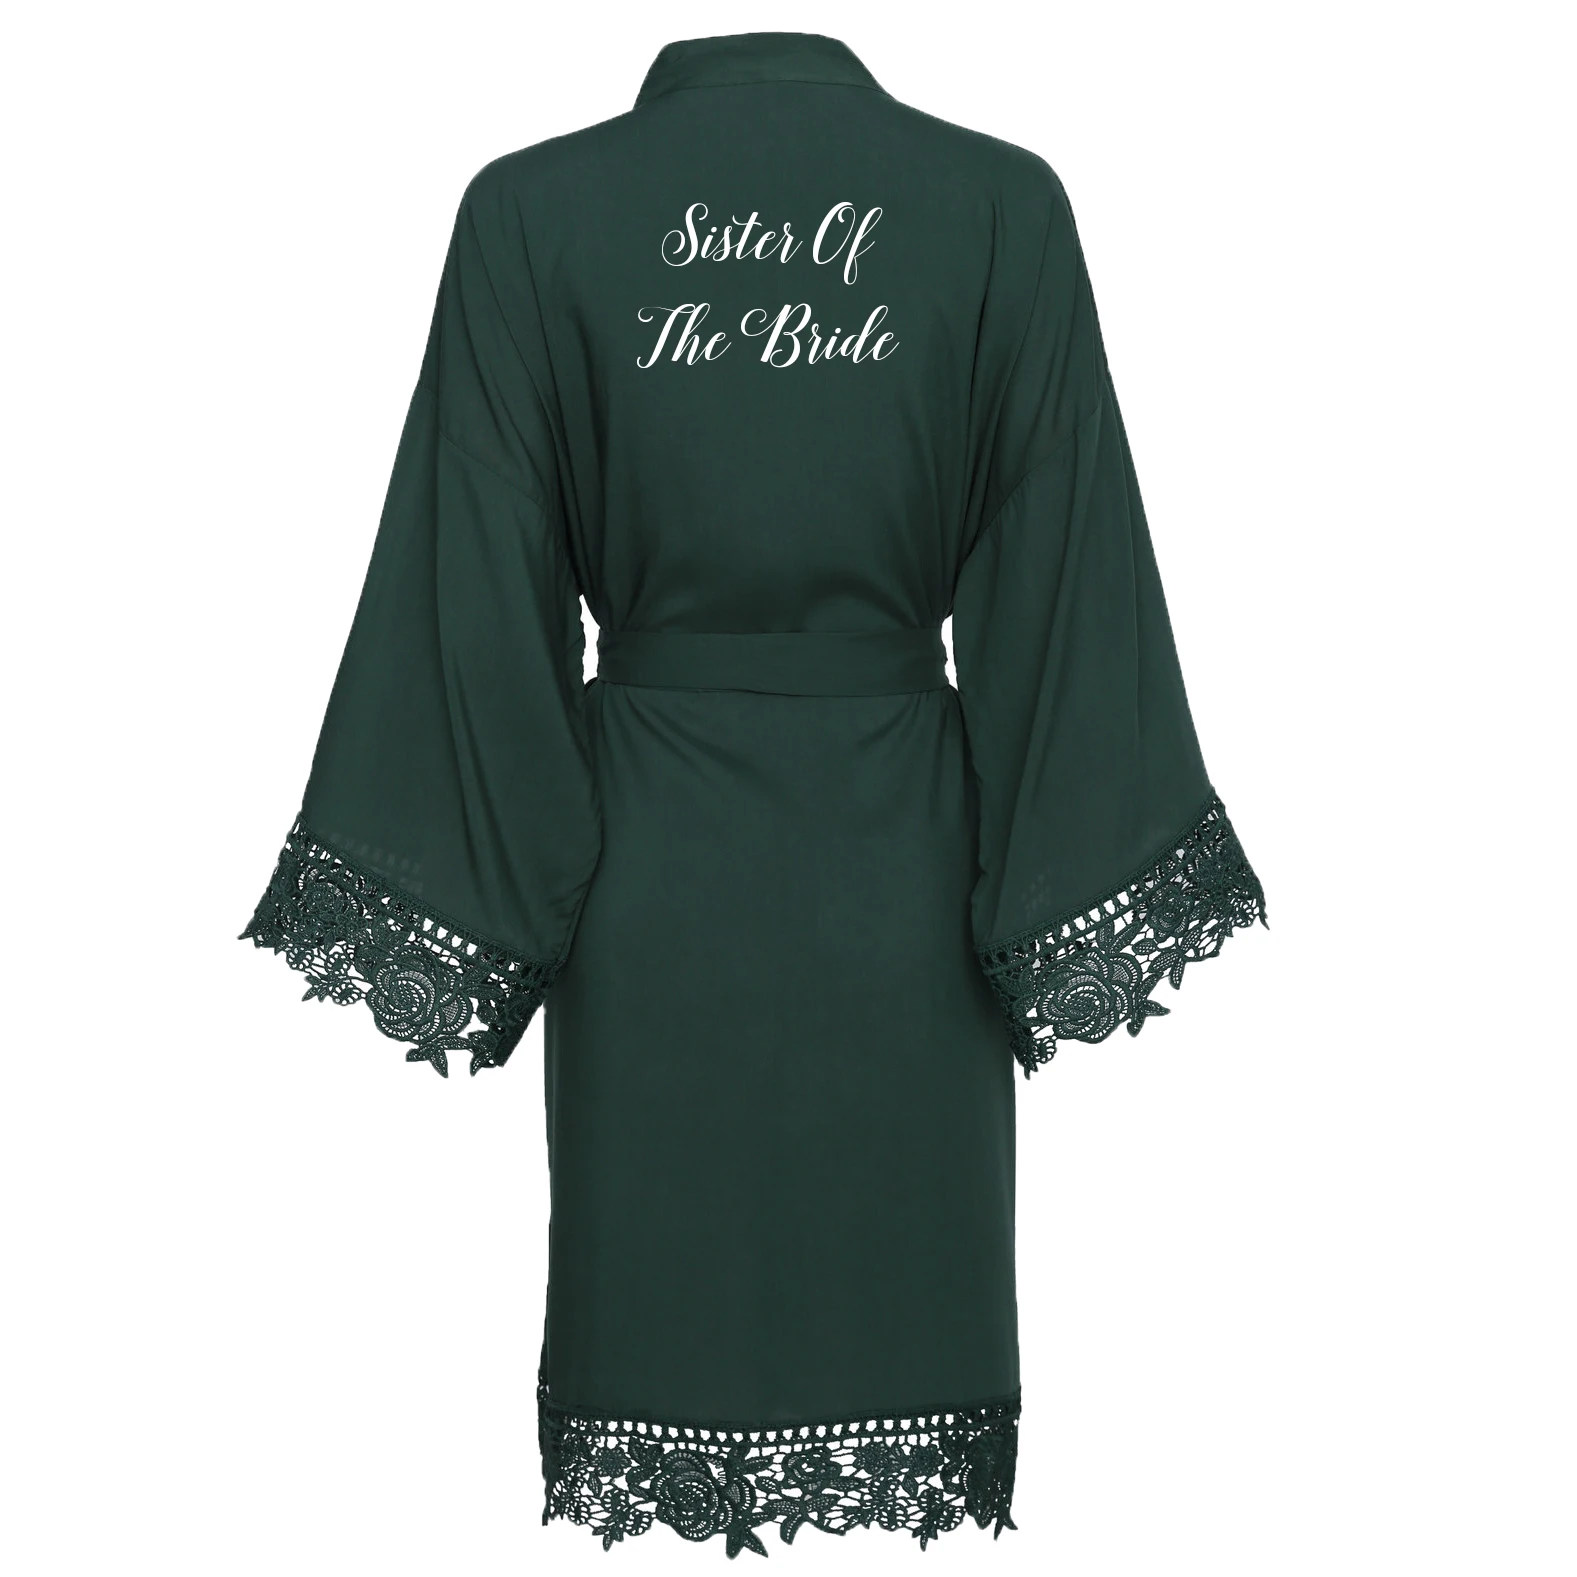 Owiter искусственный шелк зеленый сплошной хлопок кимоно халаты с кружевной отделкой для женщин свадебный Халат короткий пояс халат пижамы белый - Цвет: green Sister bride